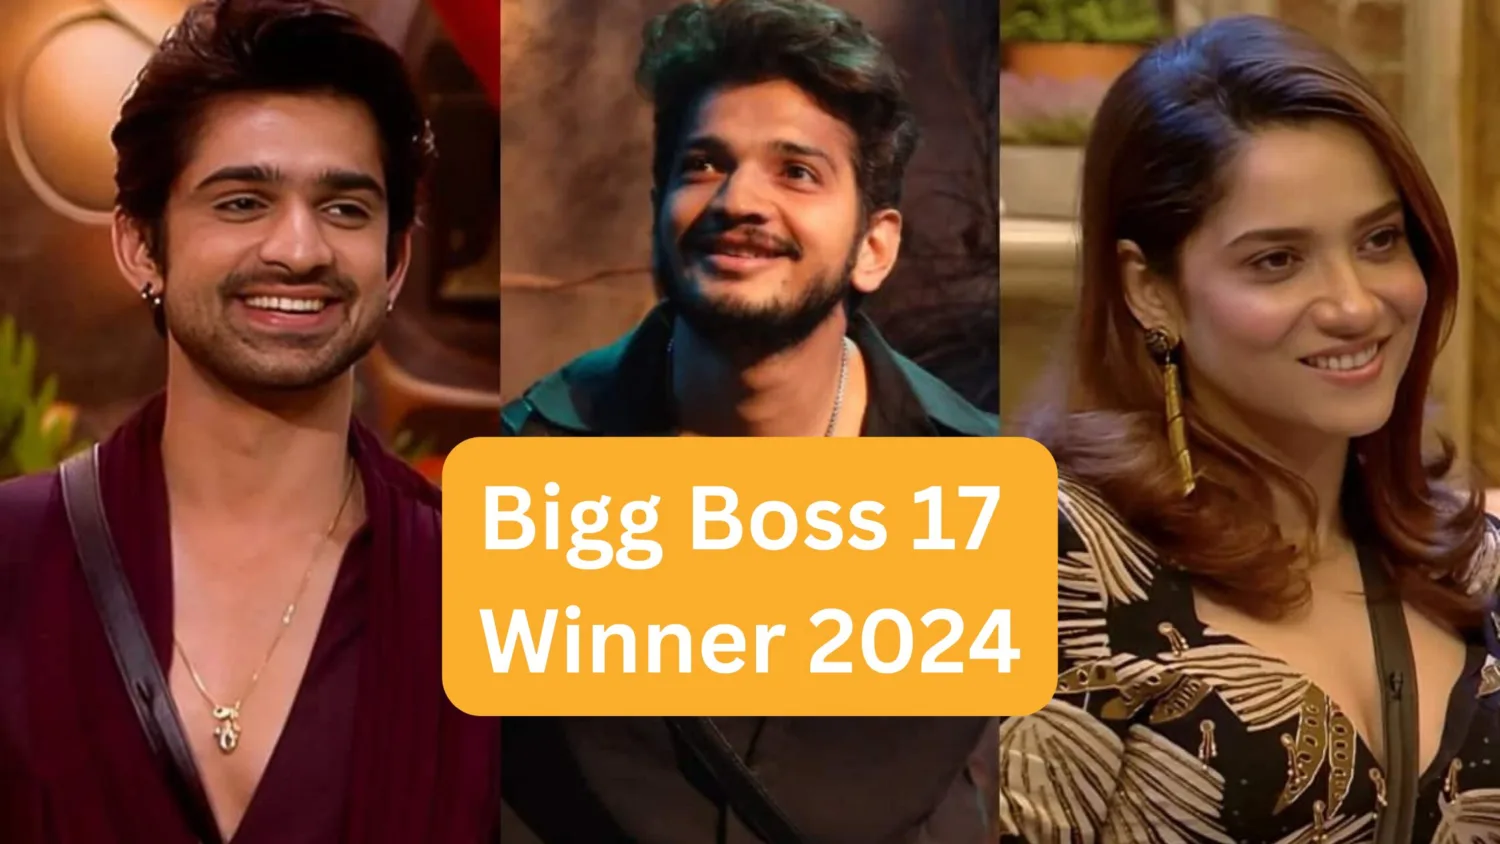 Bigg Boss 17 Winner 2024 is Munawar Faruqui SAB TV